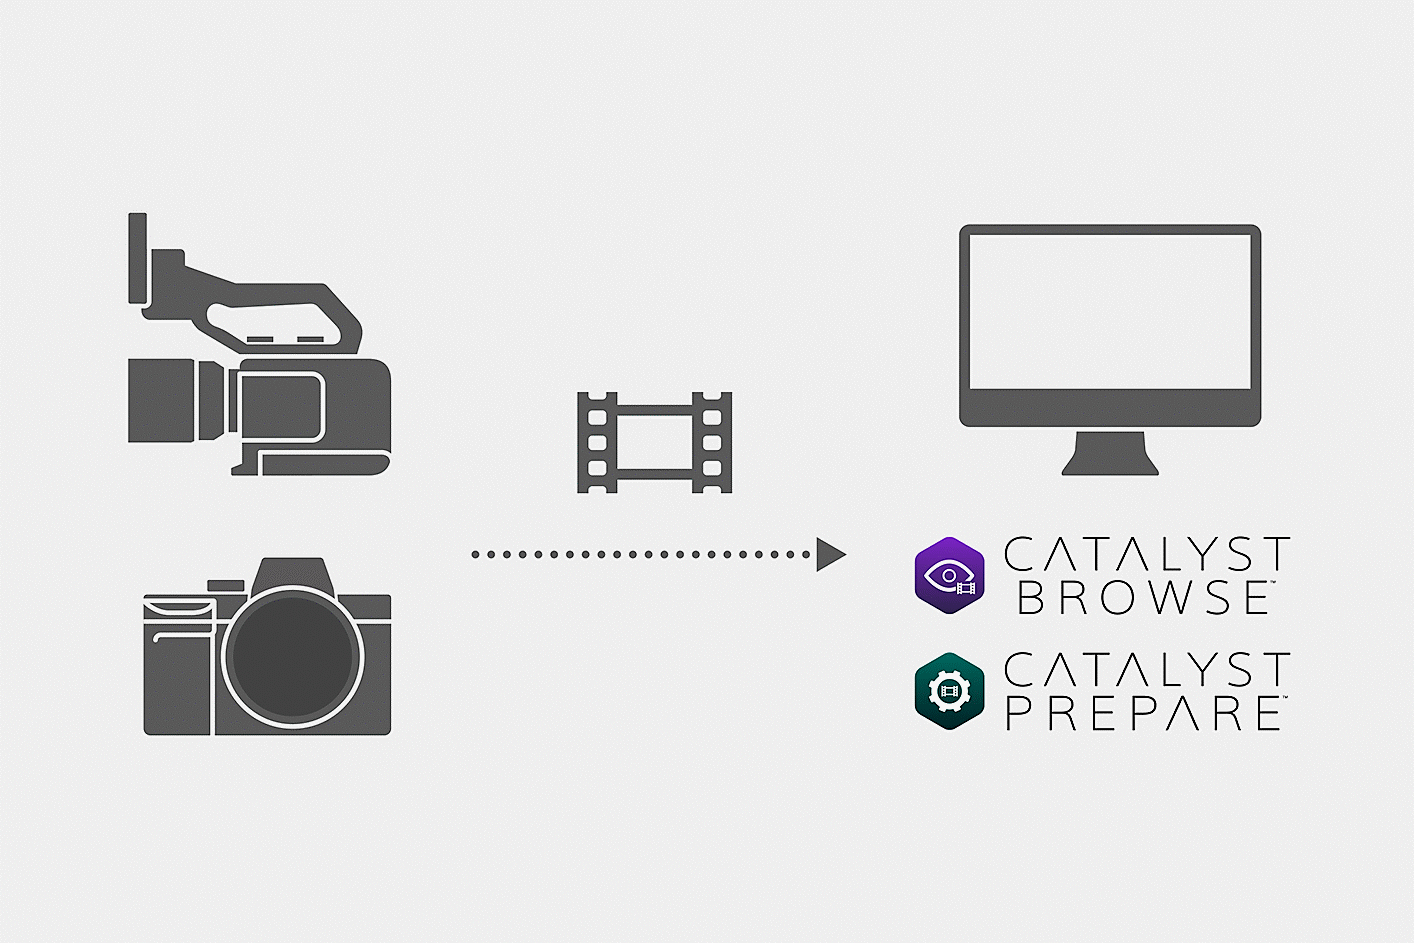 رسم توضيحي يظهر كيفية تحميل ملفات الأفلام الملتقطة بالكاميرا في Catalyst Browser أو Catalyst Prepare